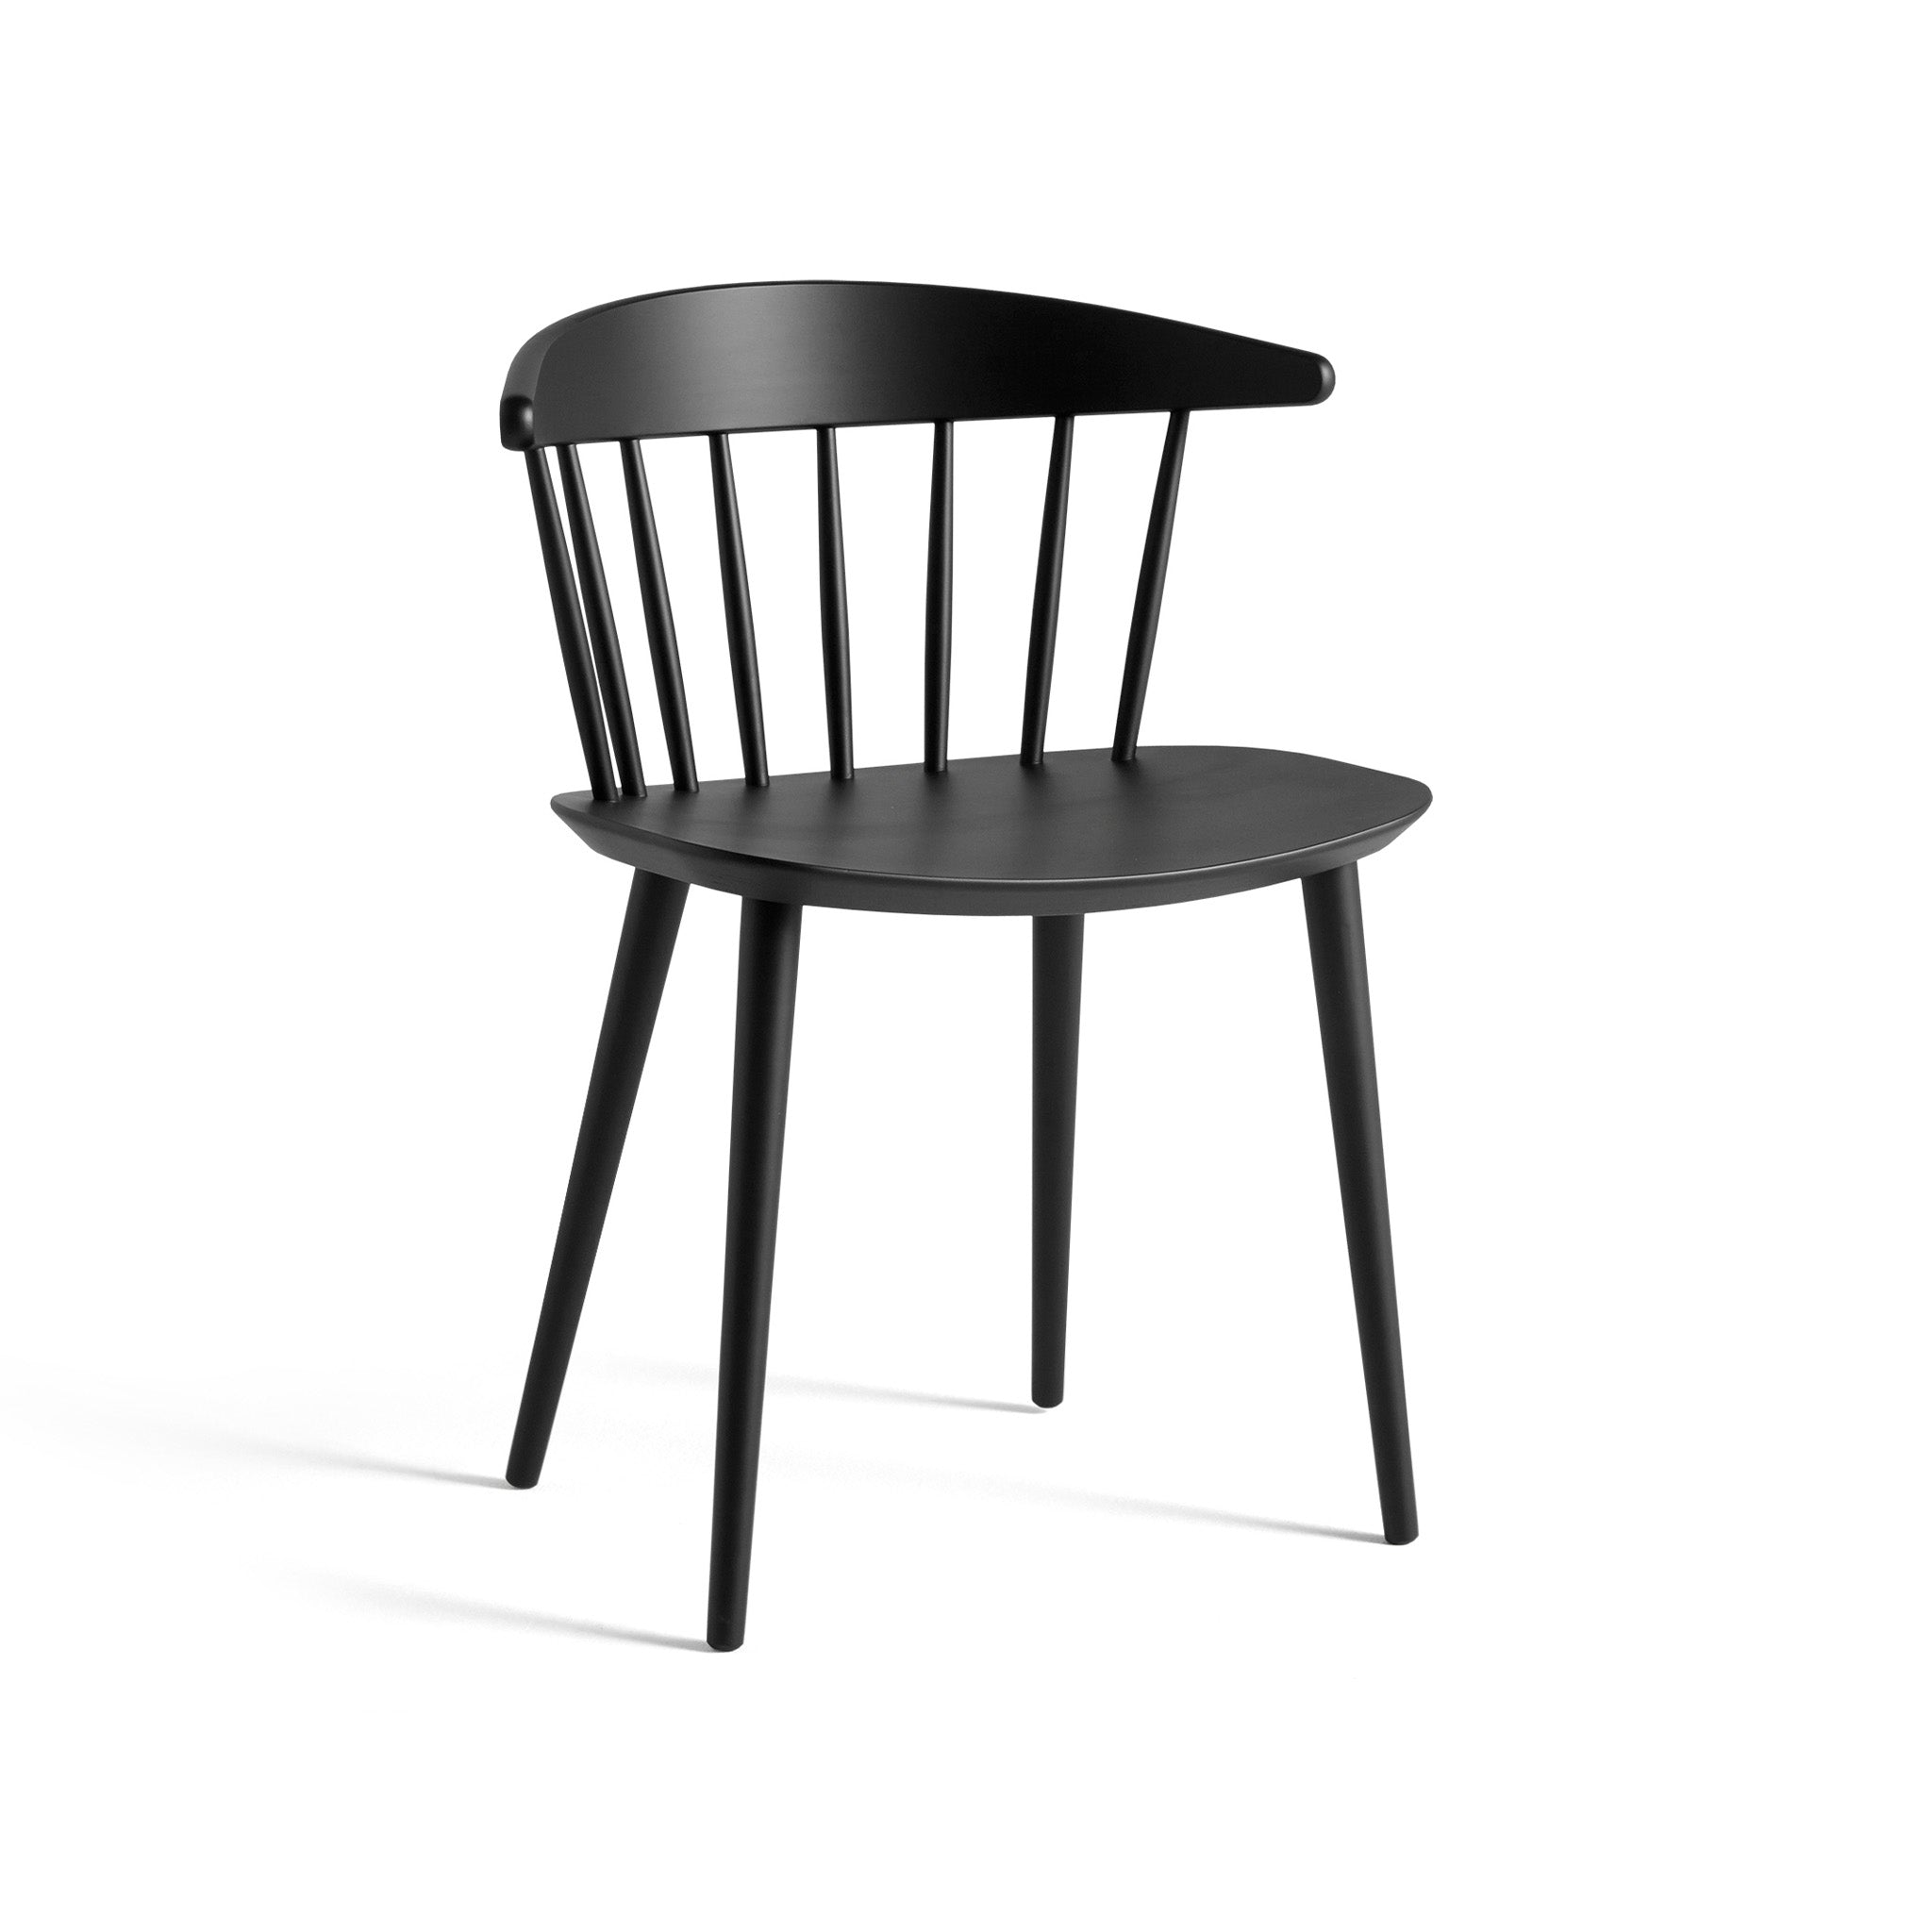 J104 Chair by Jørgen Bækmark For Hay